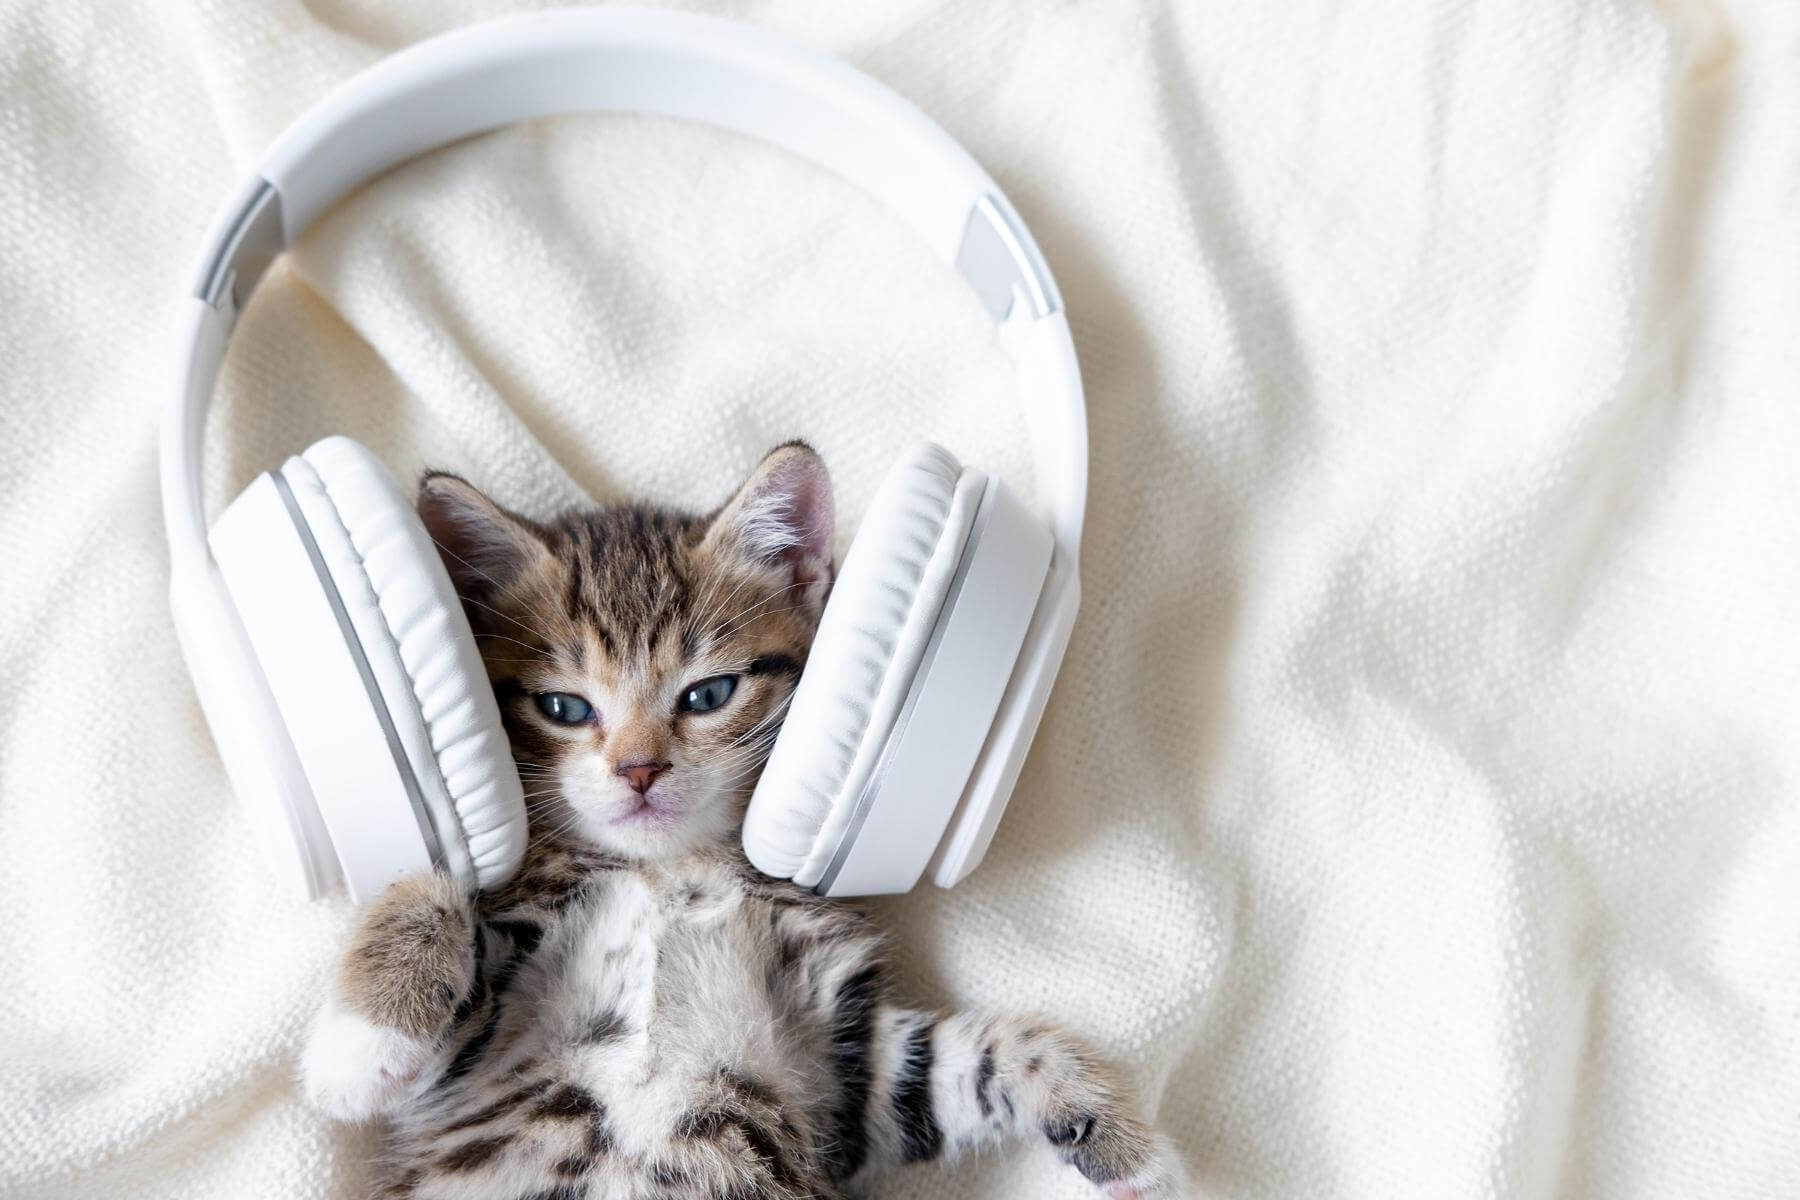 هل تحب القطط الموسيقى